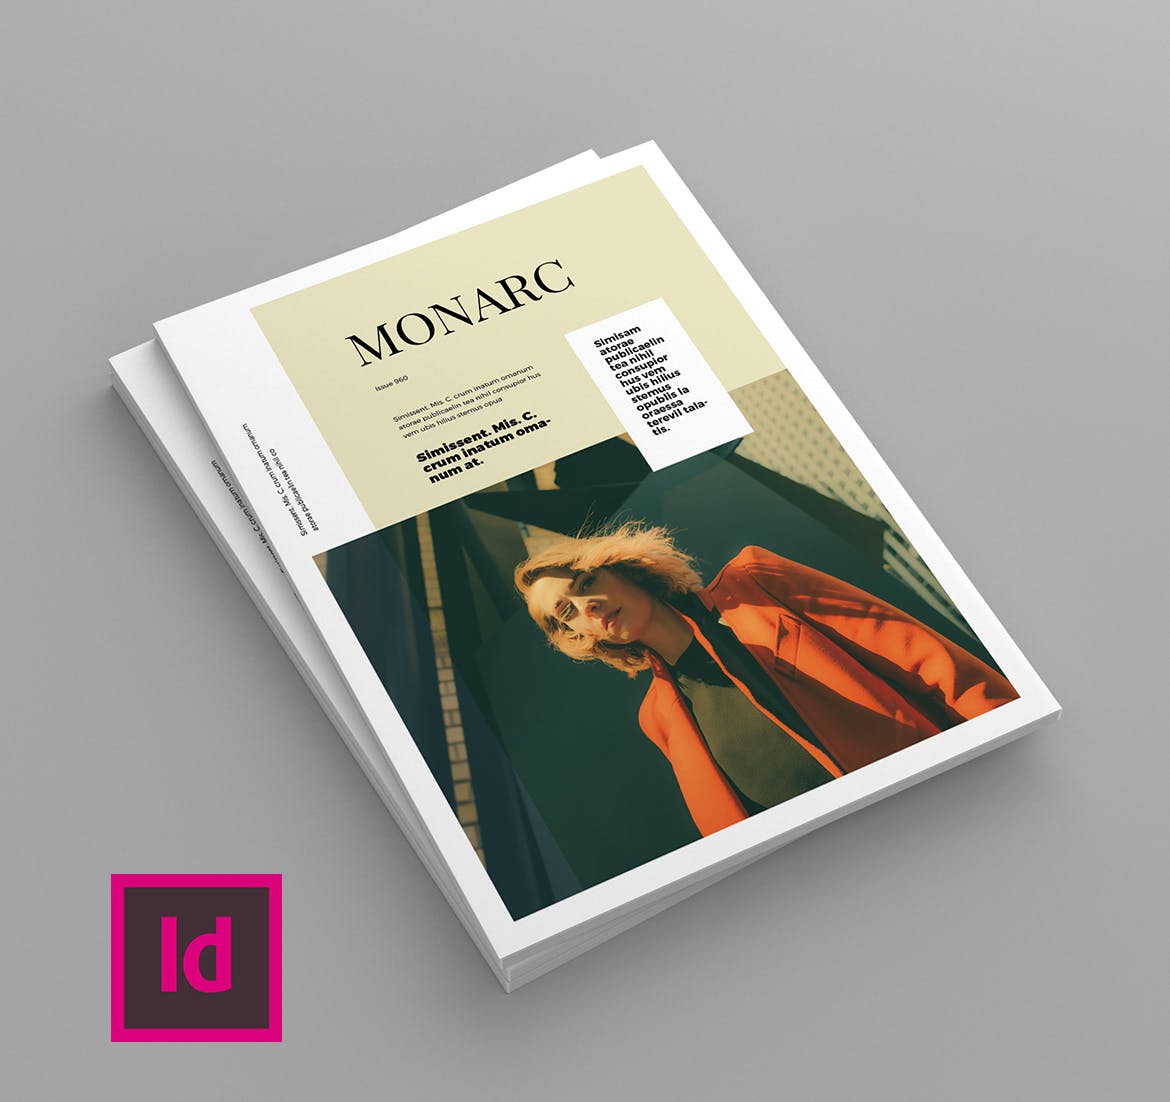 时尚企业16图库精选杂志排版设计模板 Monarc – Magazine Template插图(1)